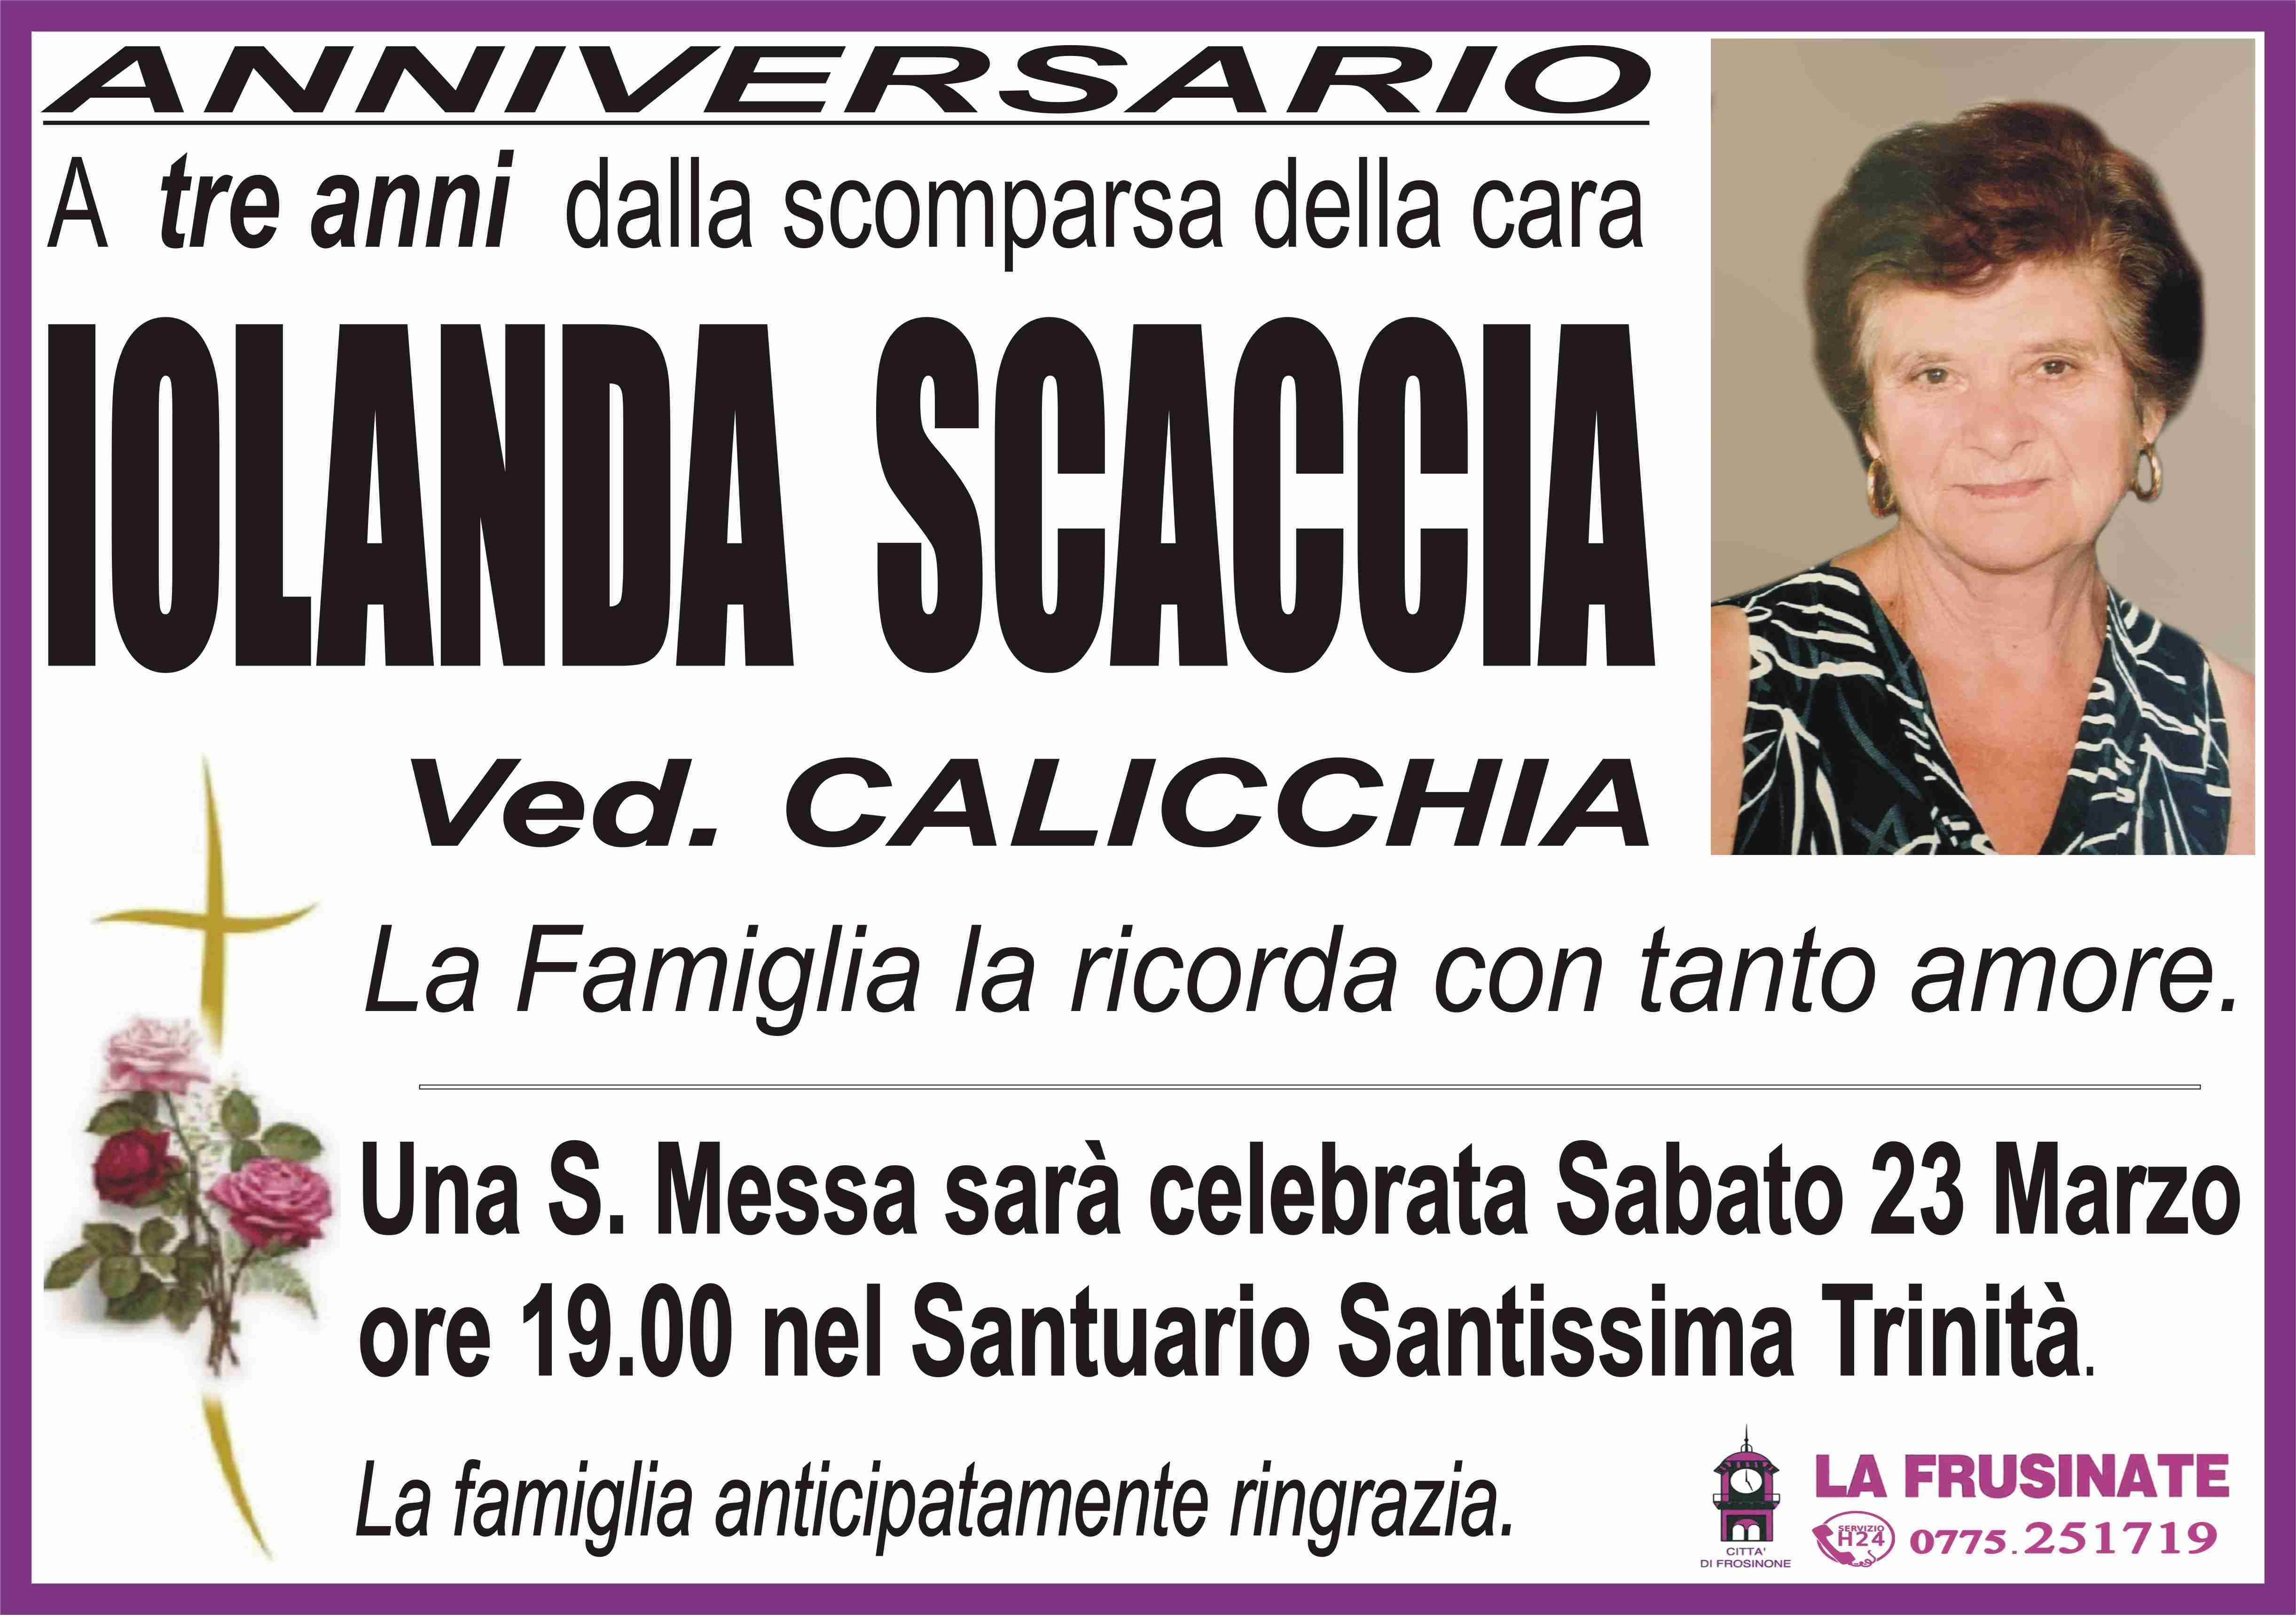 Iolanda Scaccia